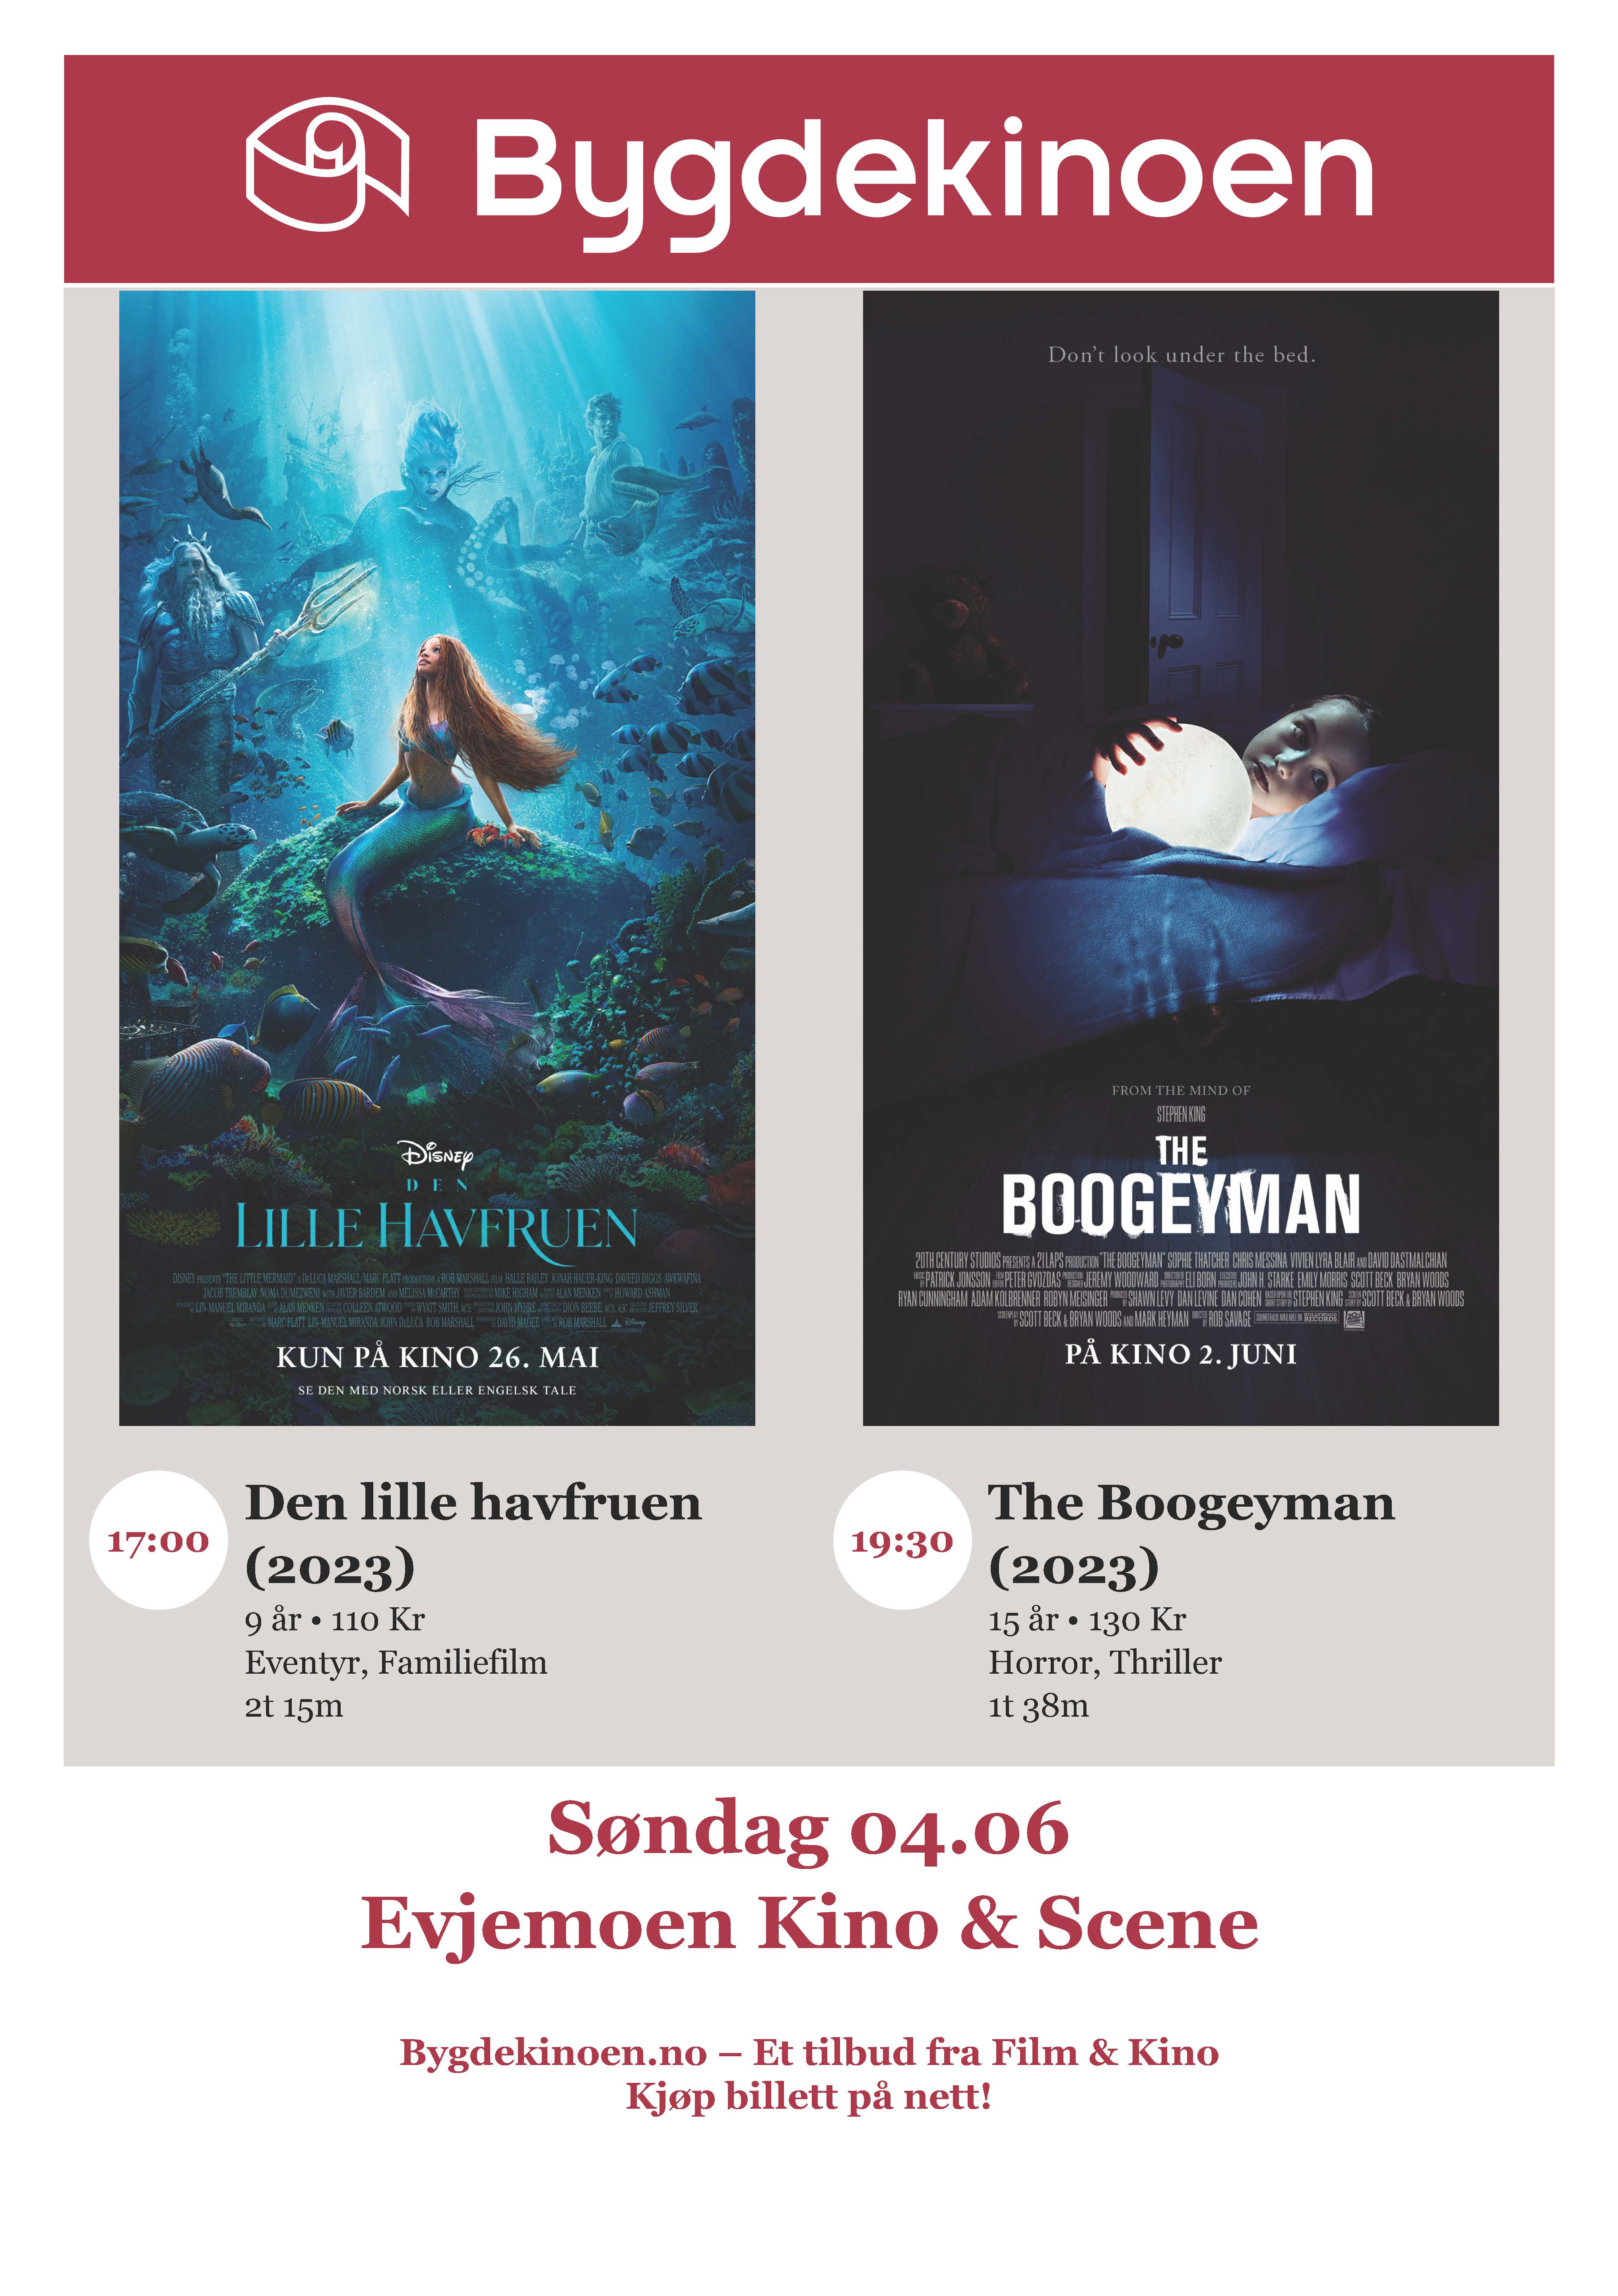 Plakat som viser hvilke to filmer som vises på Evjemoen Kino & Scene søndag 4.juni 2023. 